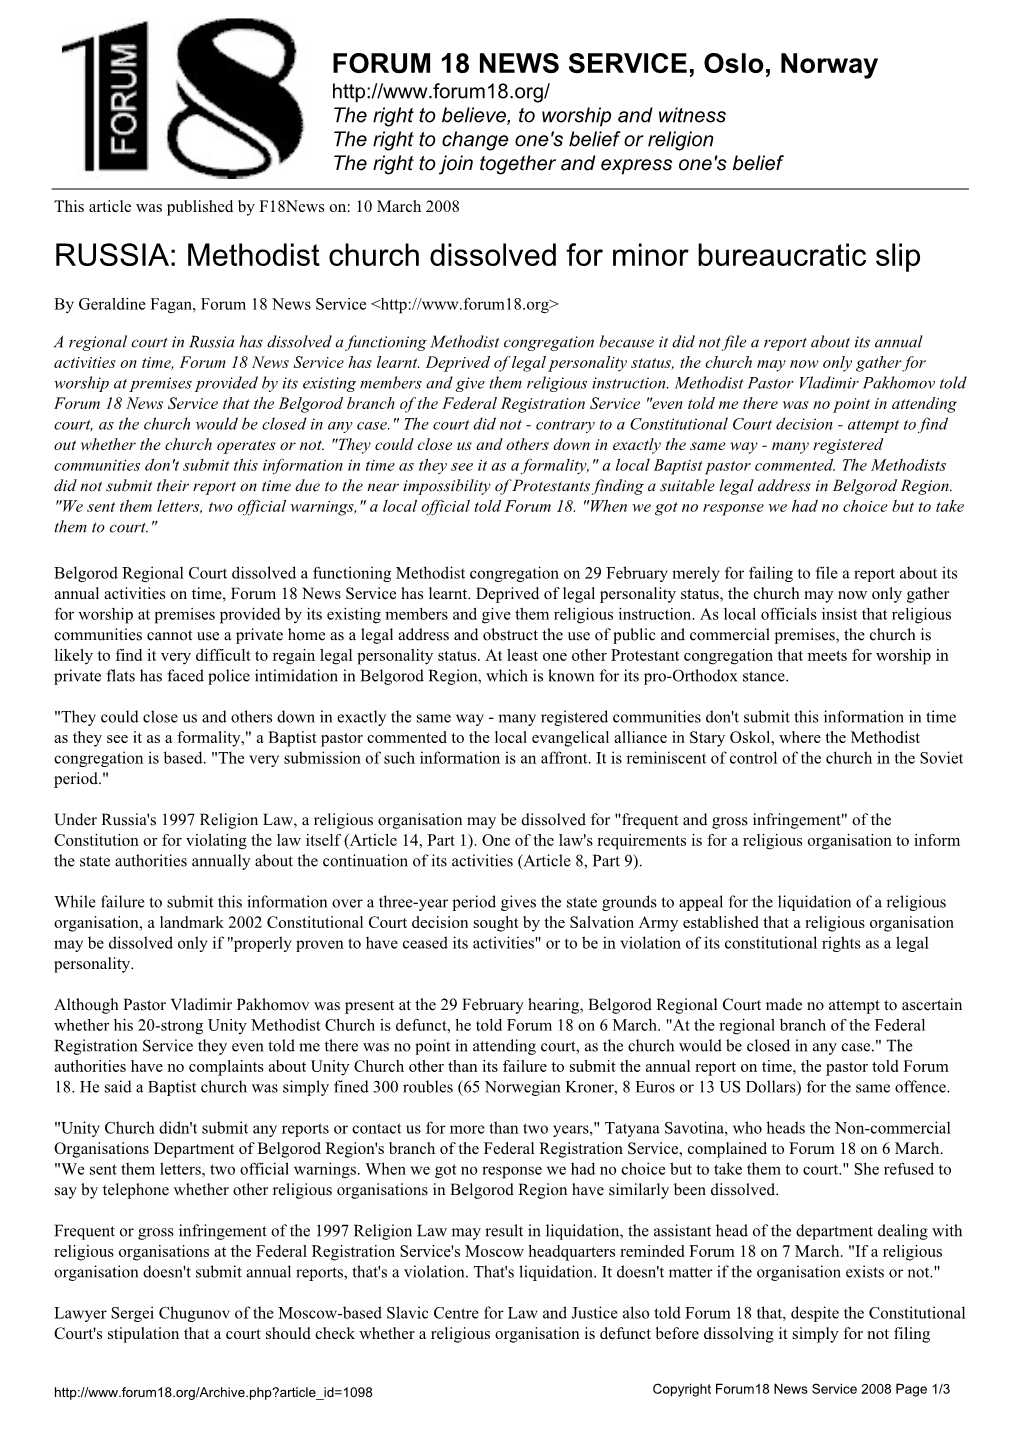 Methodist Church Dissolved for Minor Bureaucratic Slip